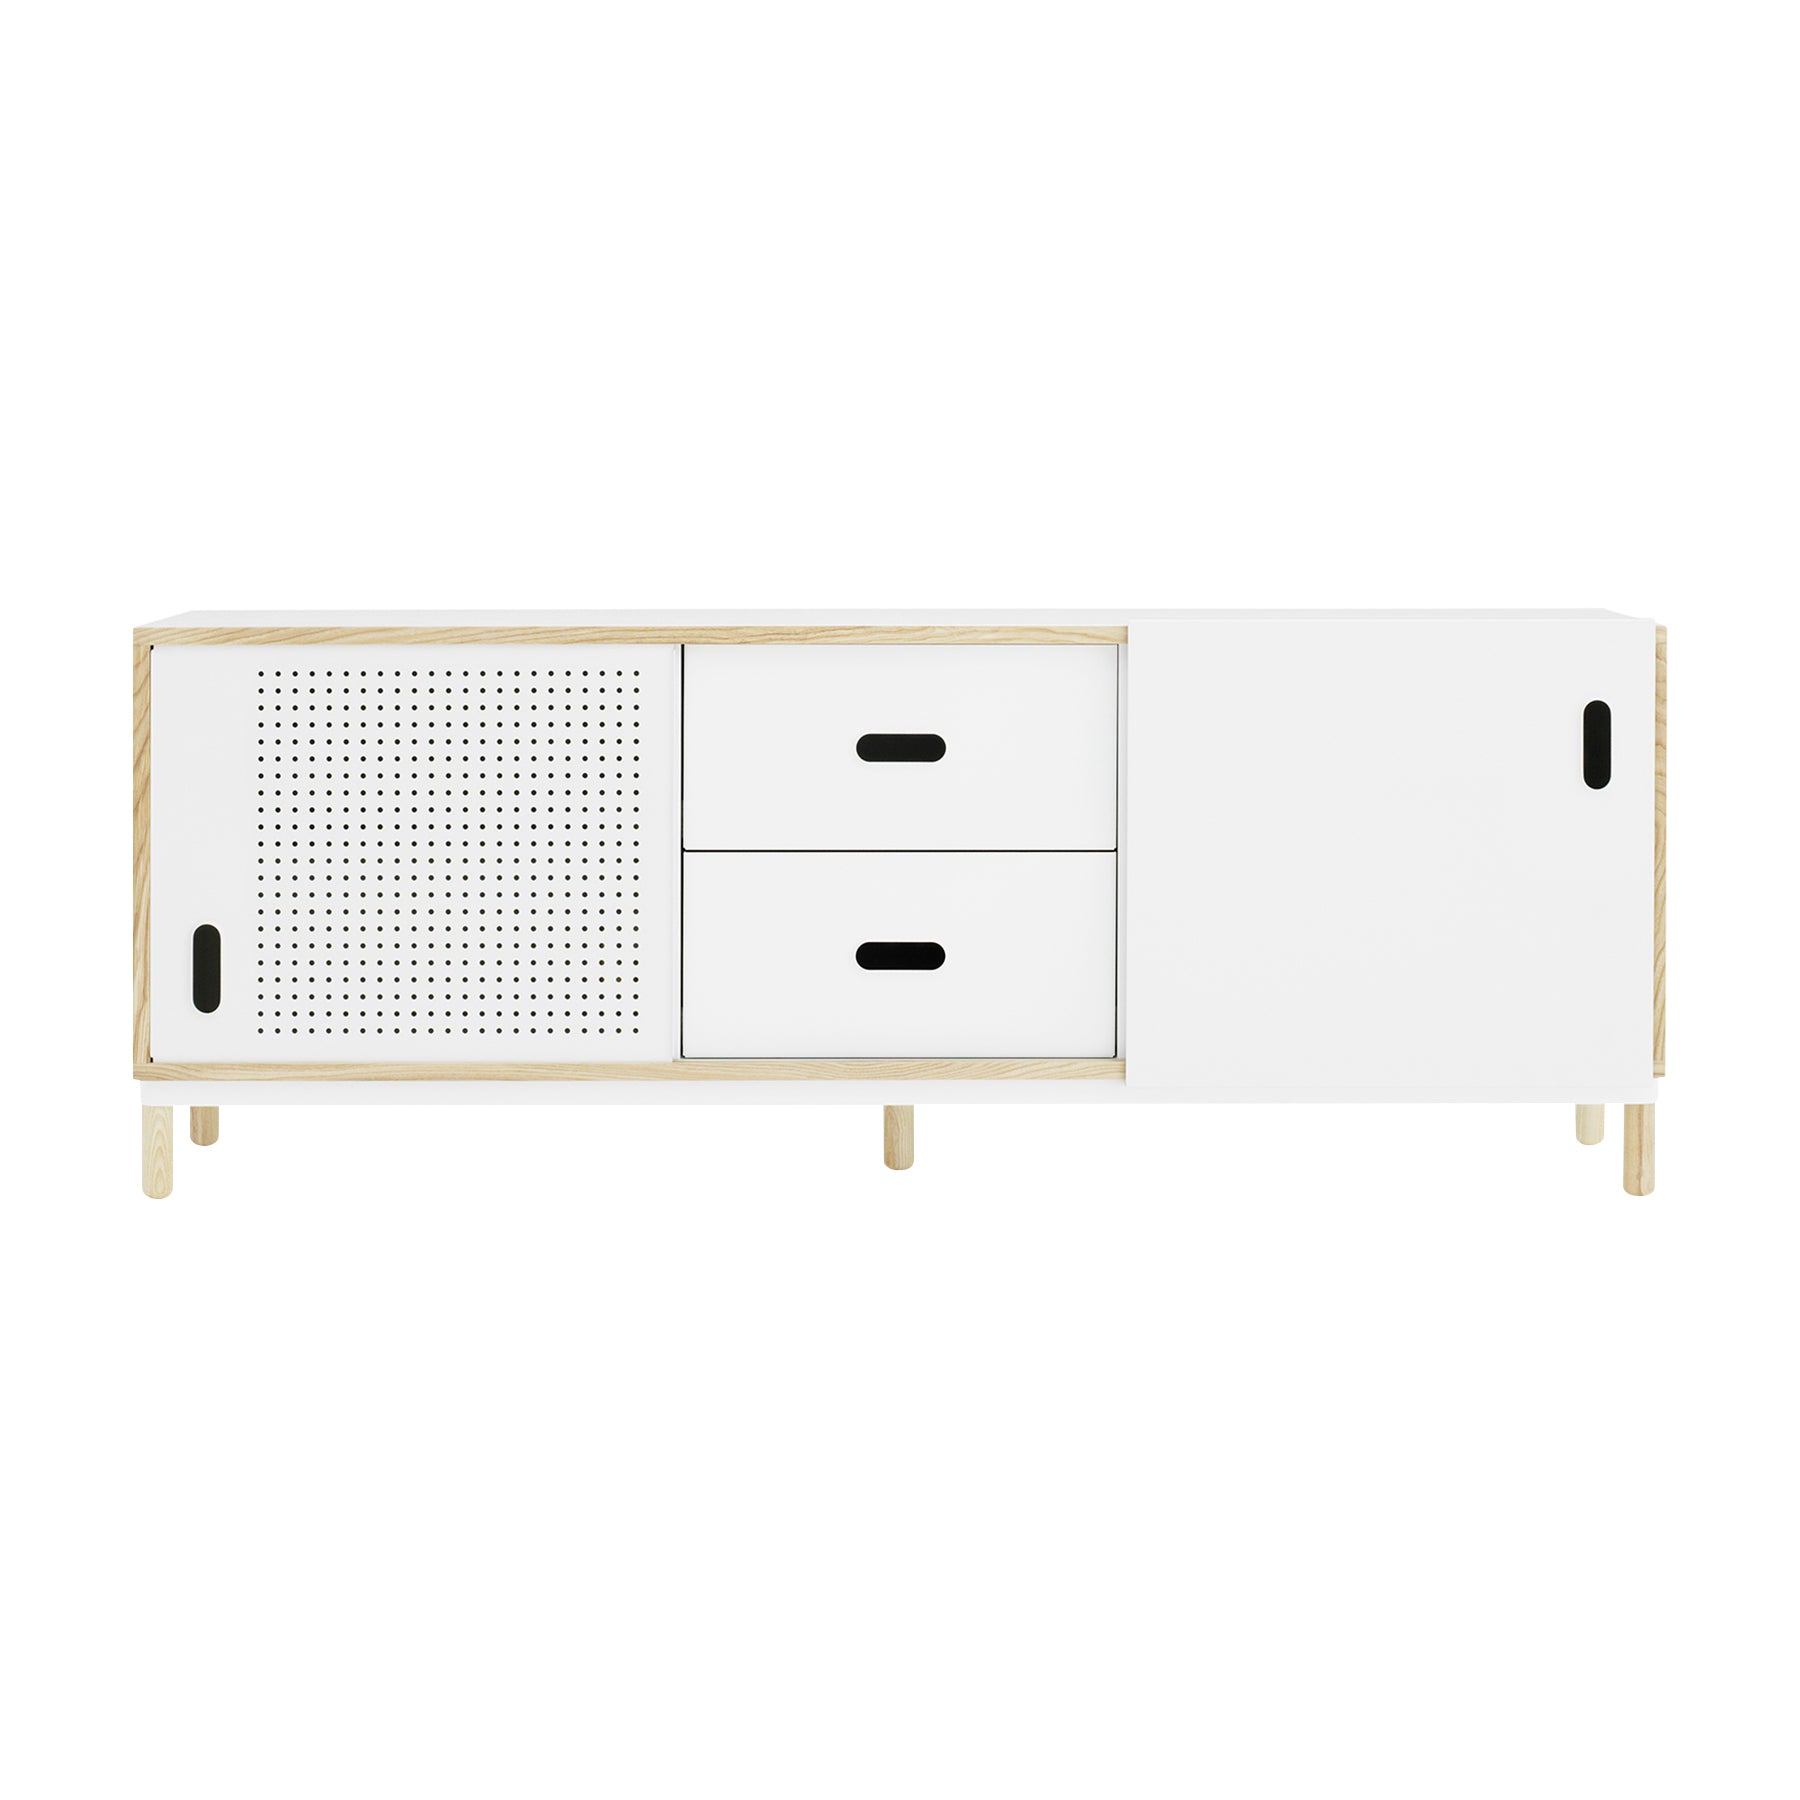 Kabino Sideboard + Drawers: White